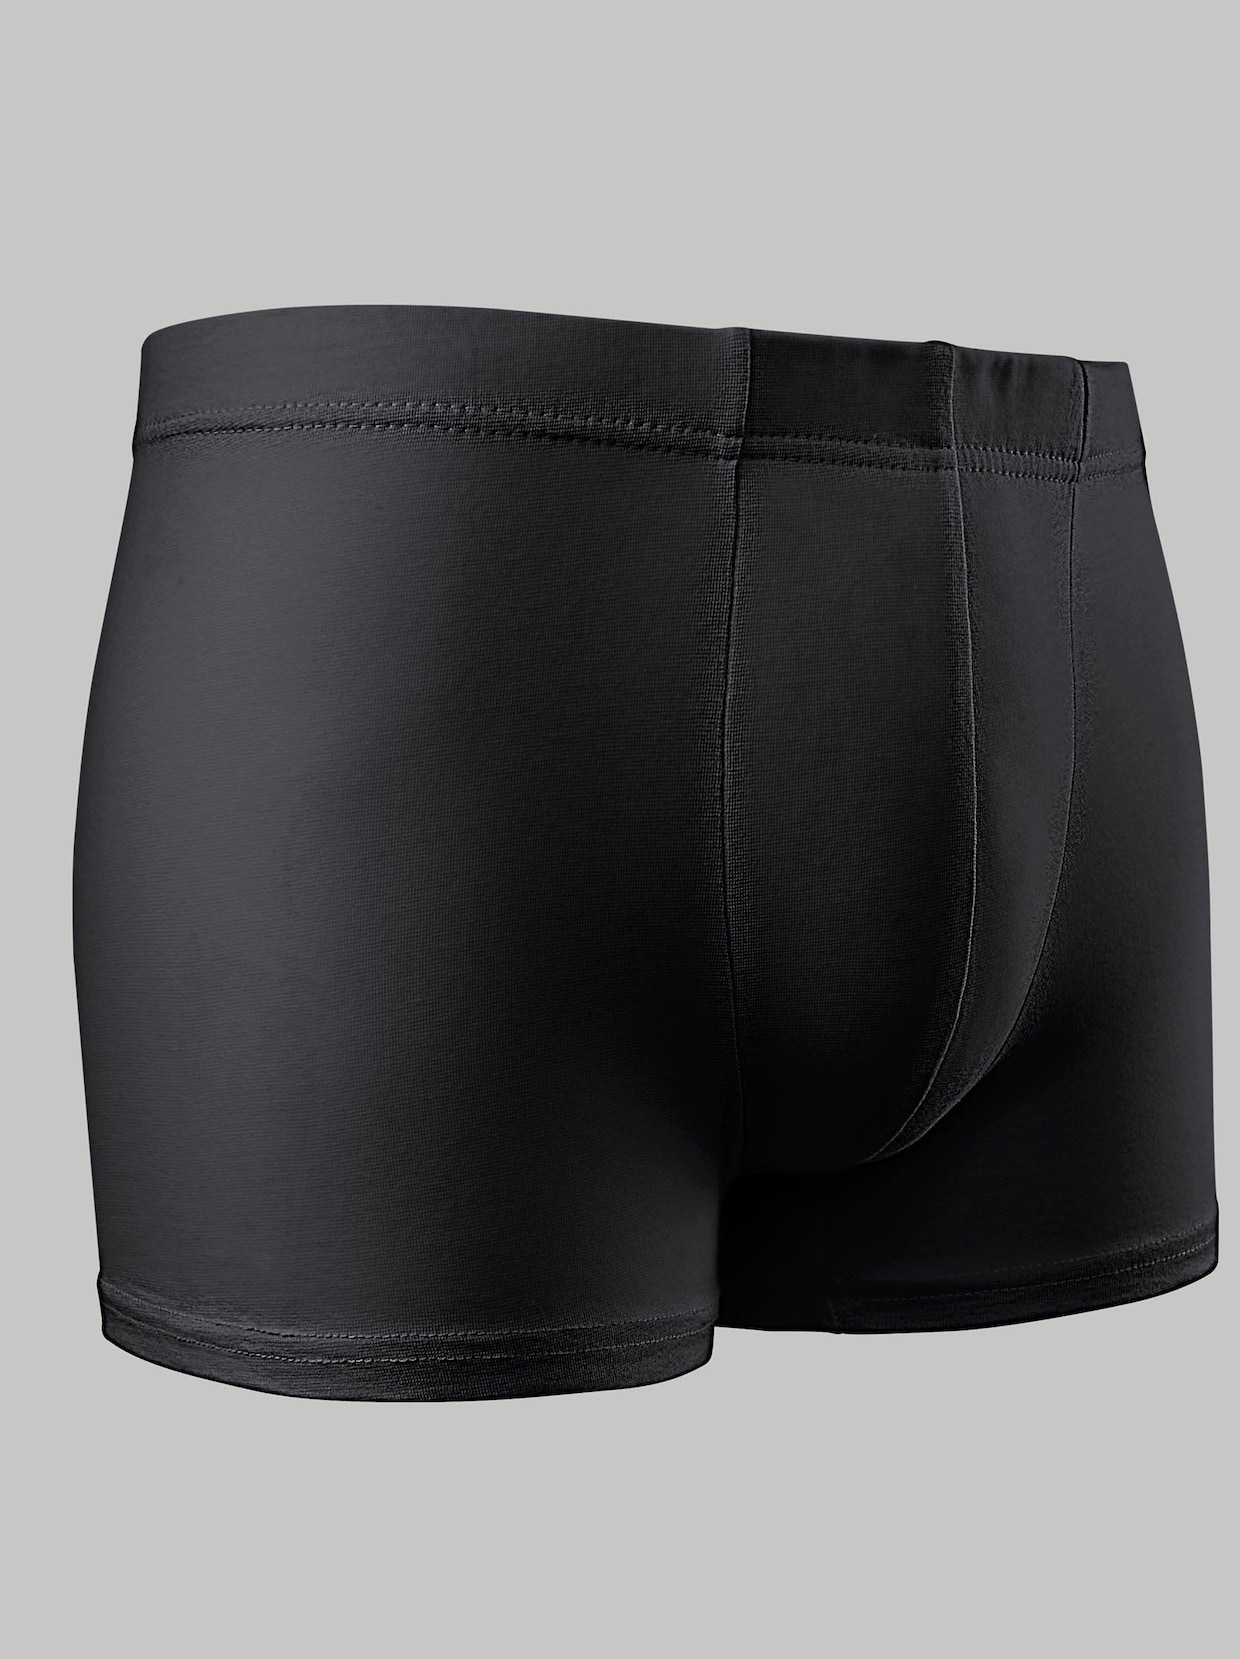 KINGsCLUB Pants - 3x grau + 2x schwarz